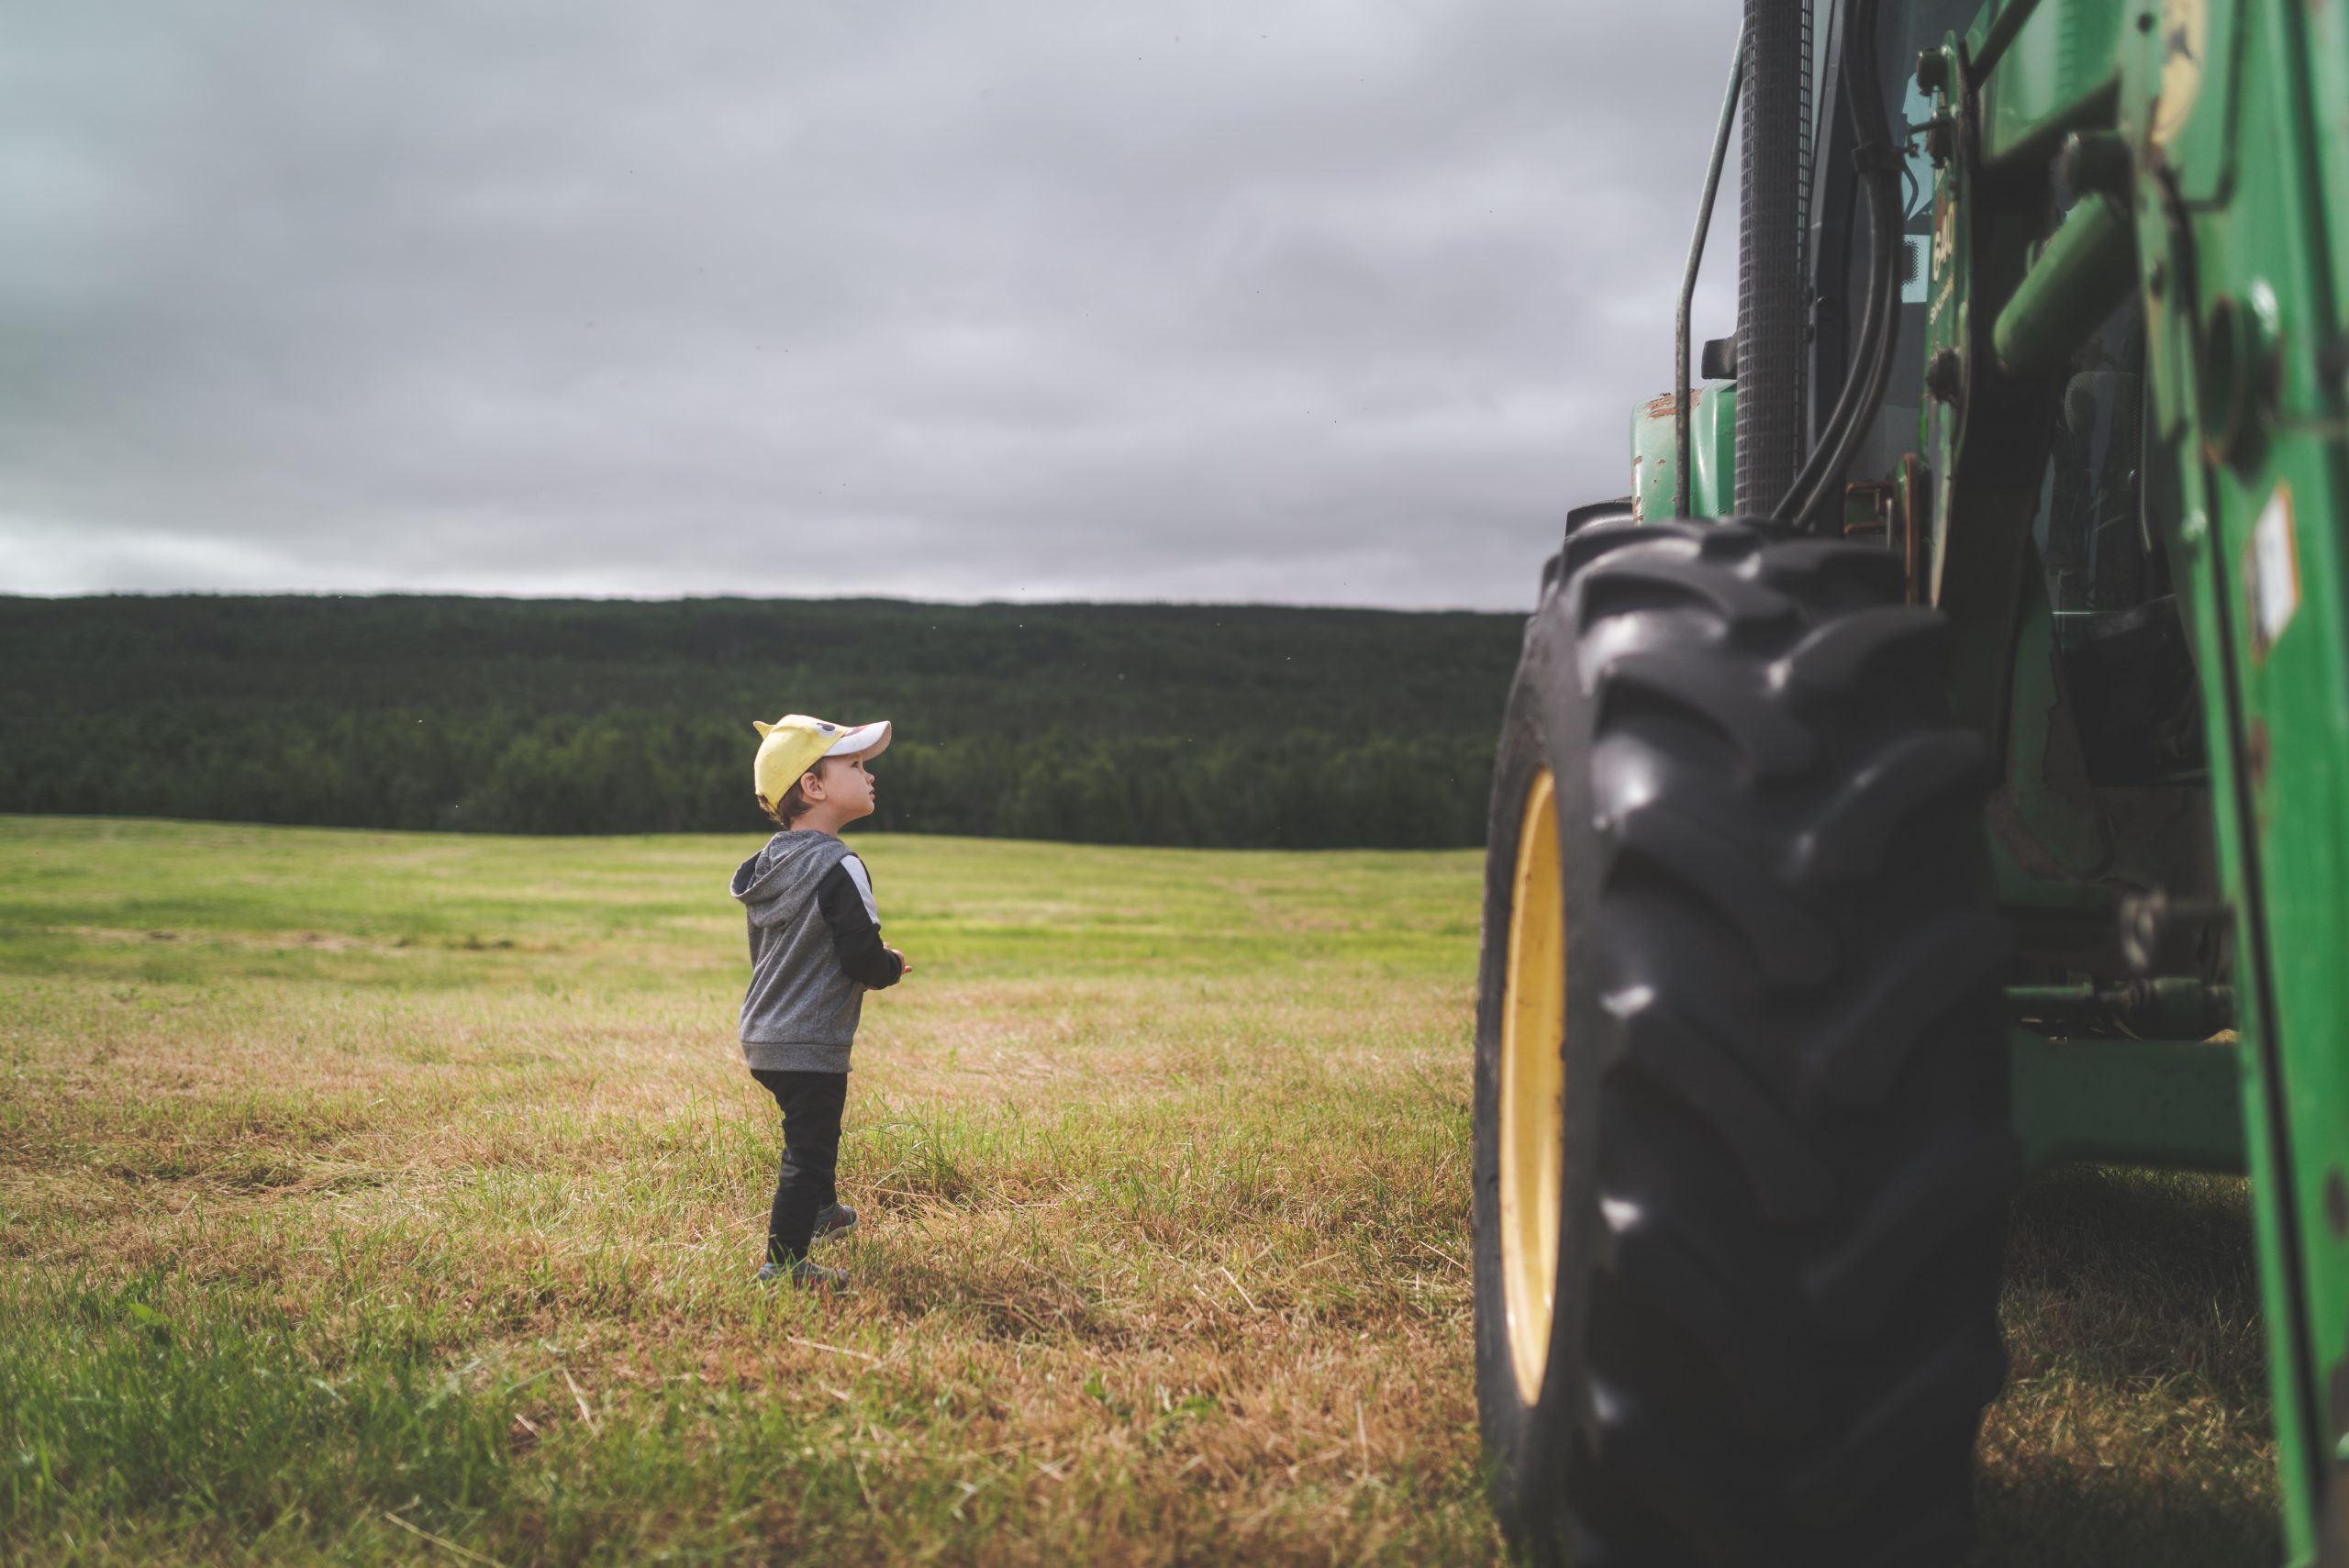 Bezpieczeństwo dzieci w gospodarstwach rolniczych. Zasady, których nie wolno łamać